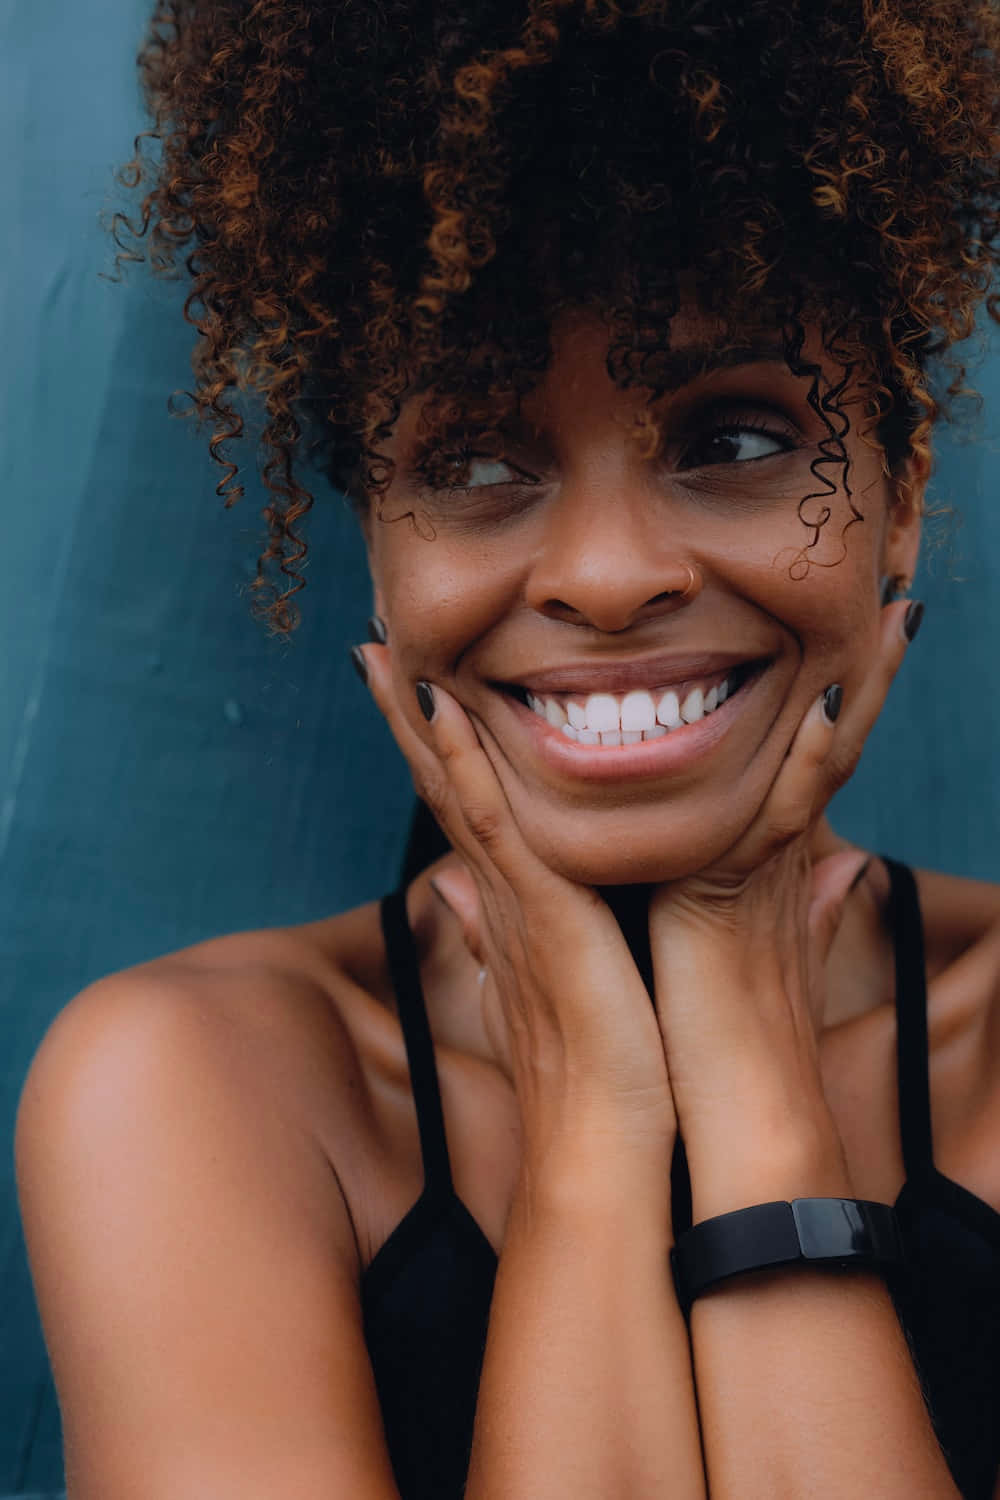 Imagende Una Mujer Afroamericana Sonriendo En Negro.